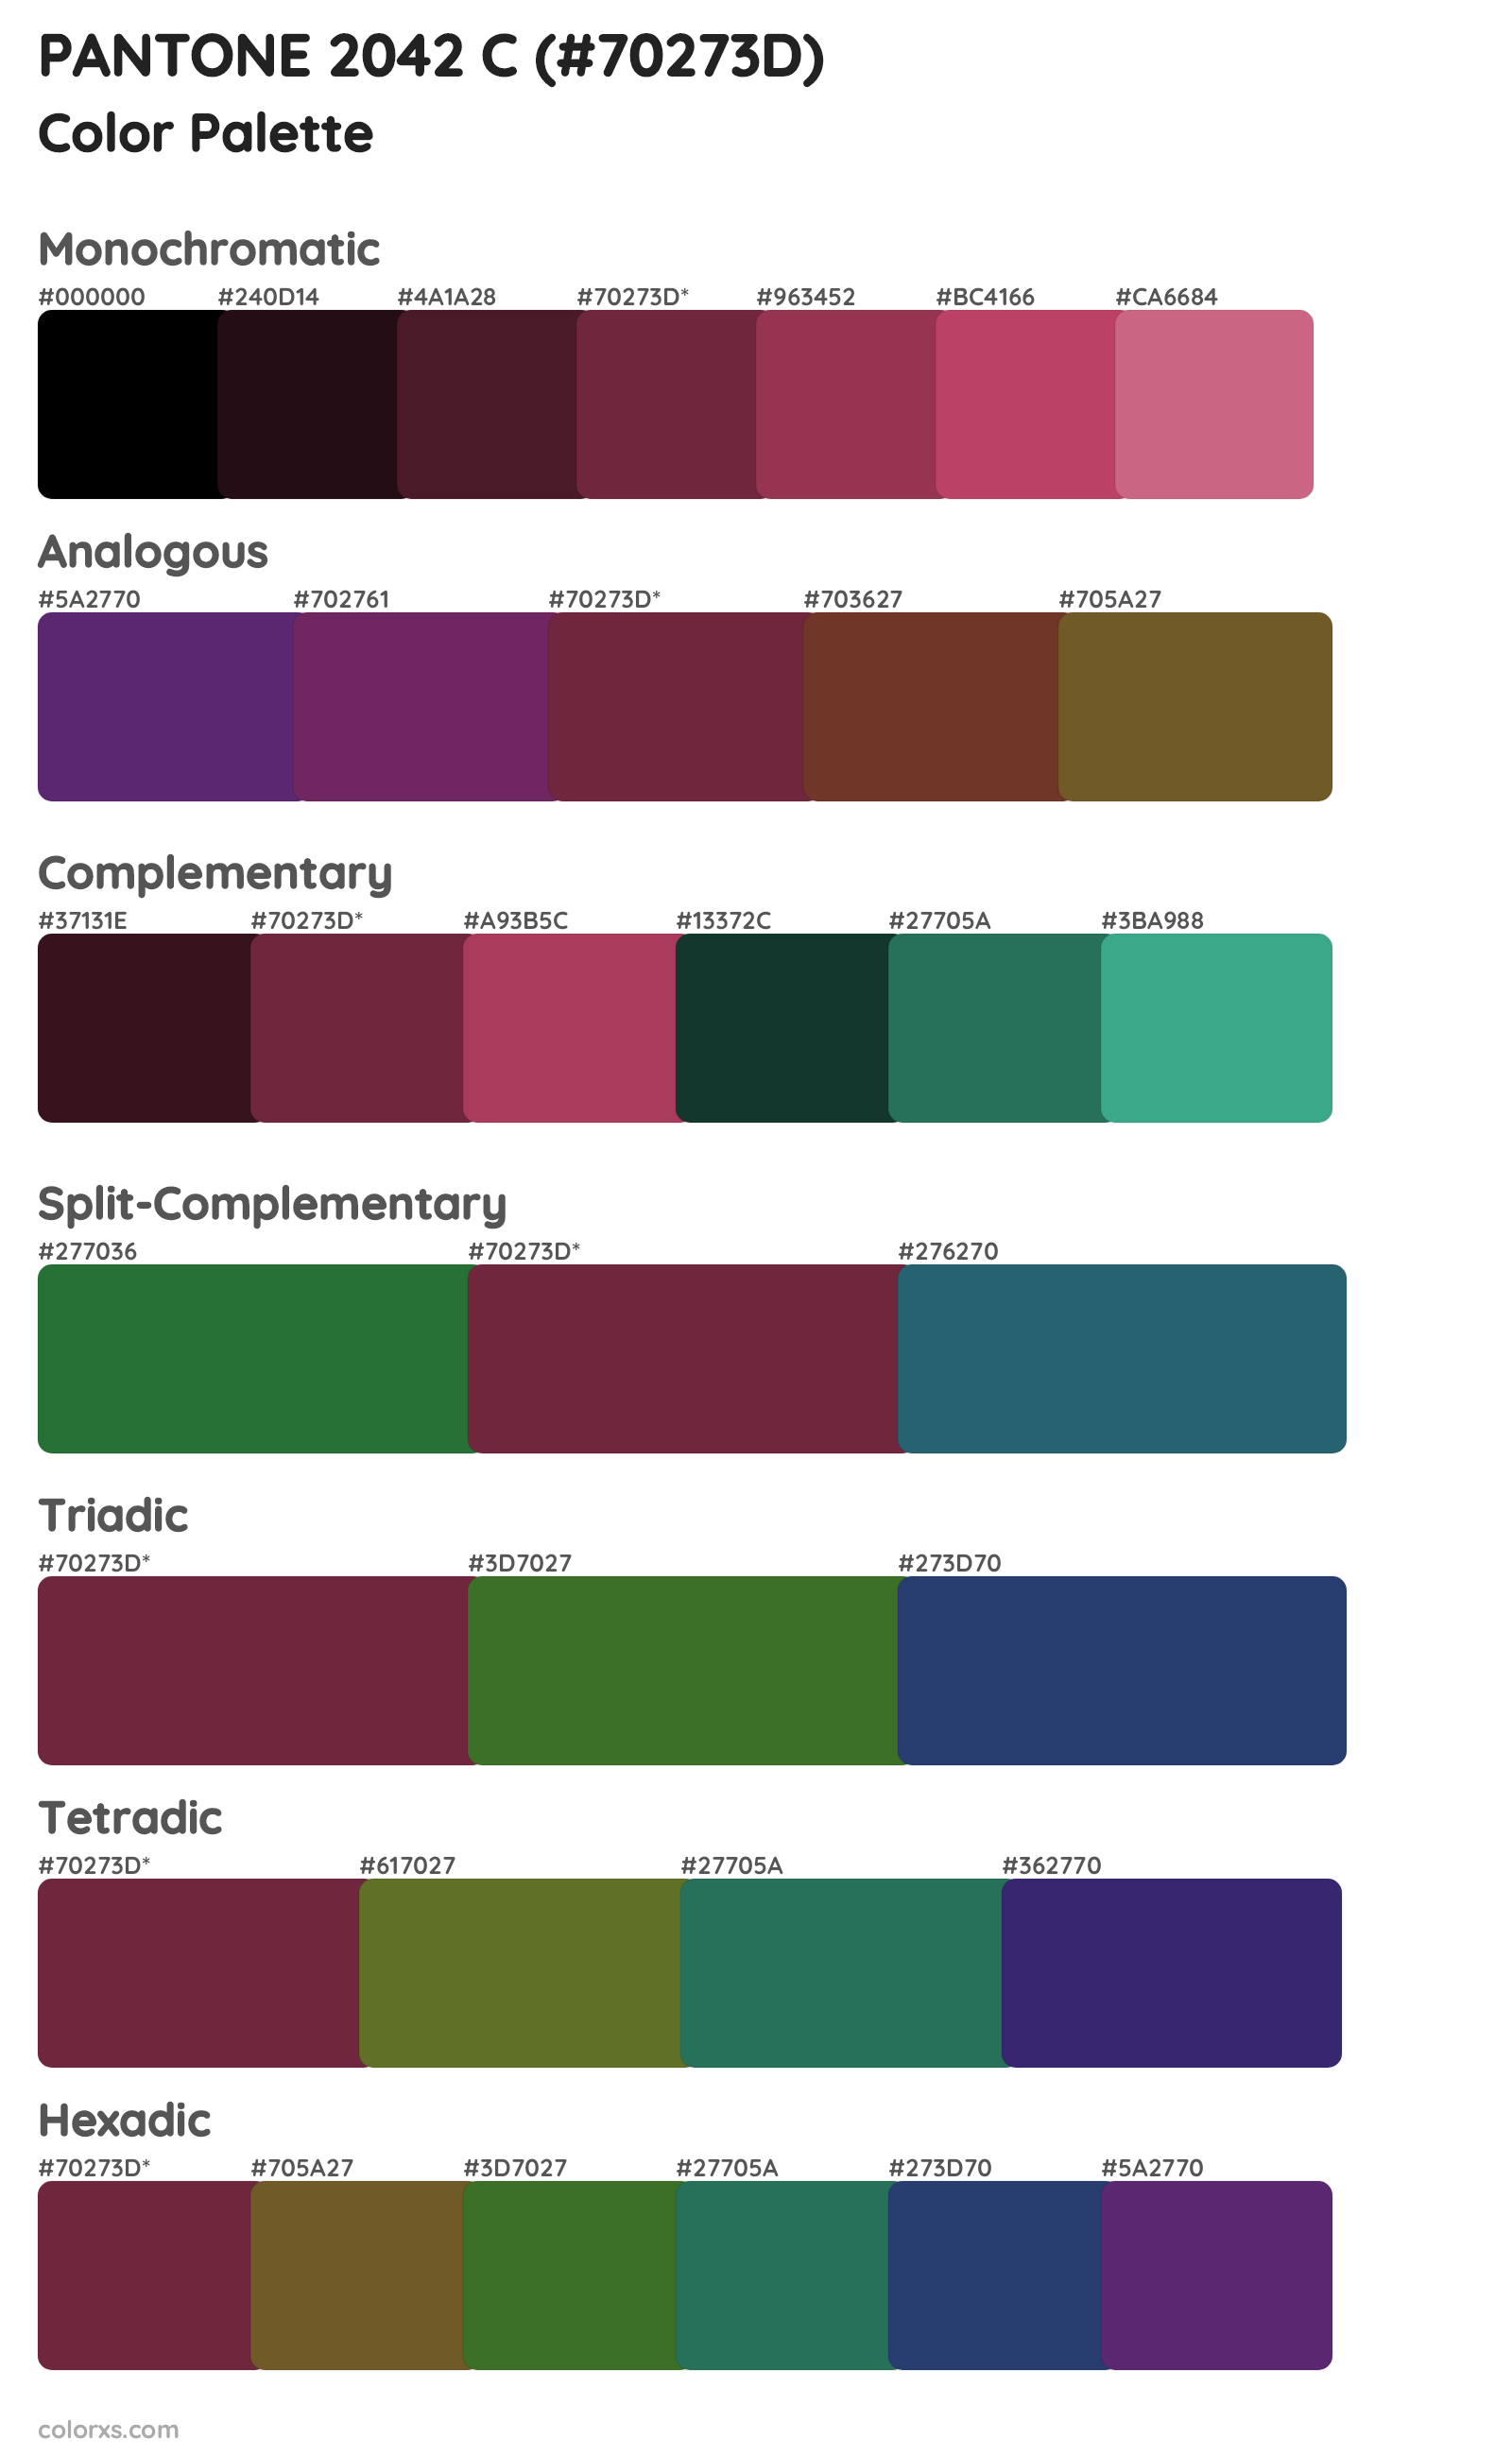 PANTONE 2042 C Color Scheme Palettes